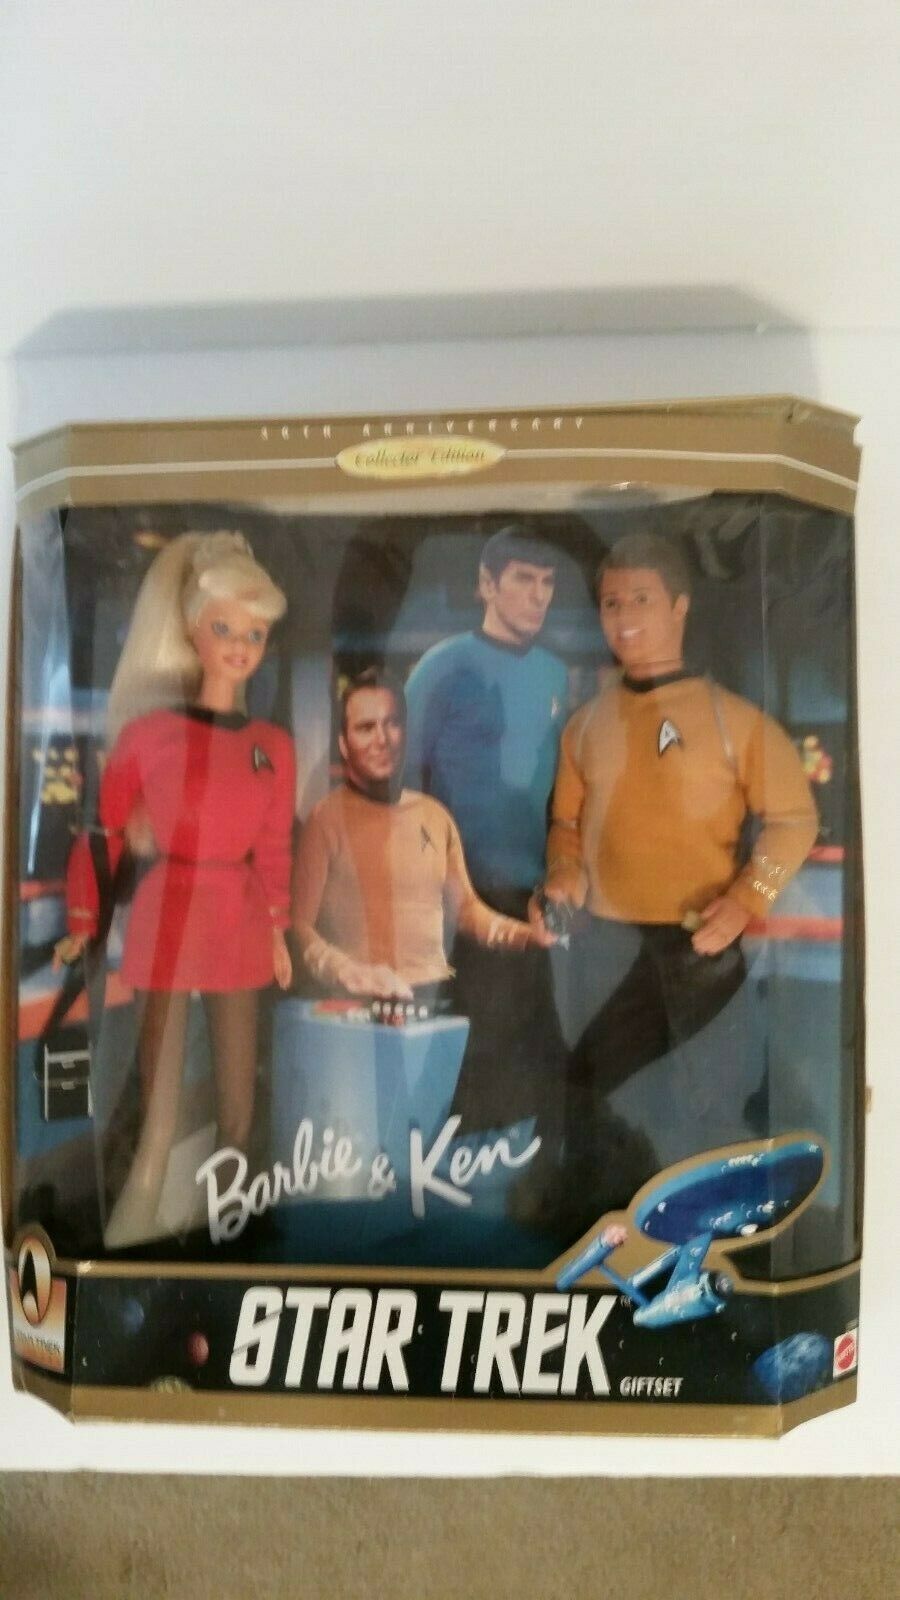 30th Anniversary Barbie & Ken Star Trek. Gift Set Collector Edition.1996 Mattel